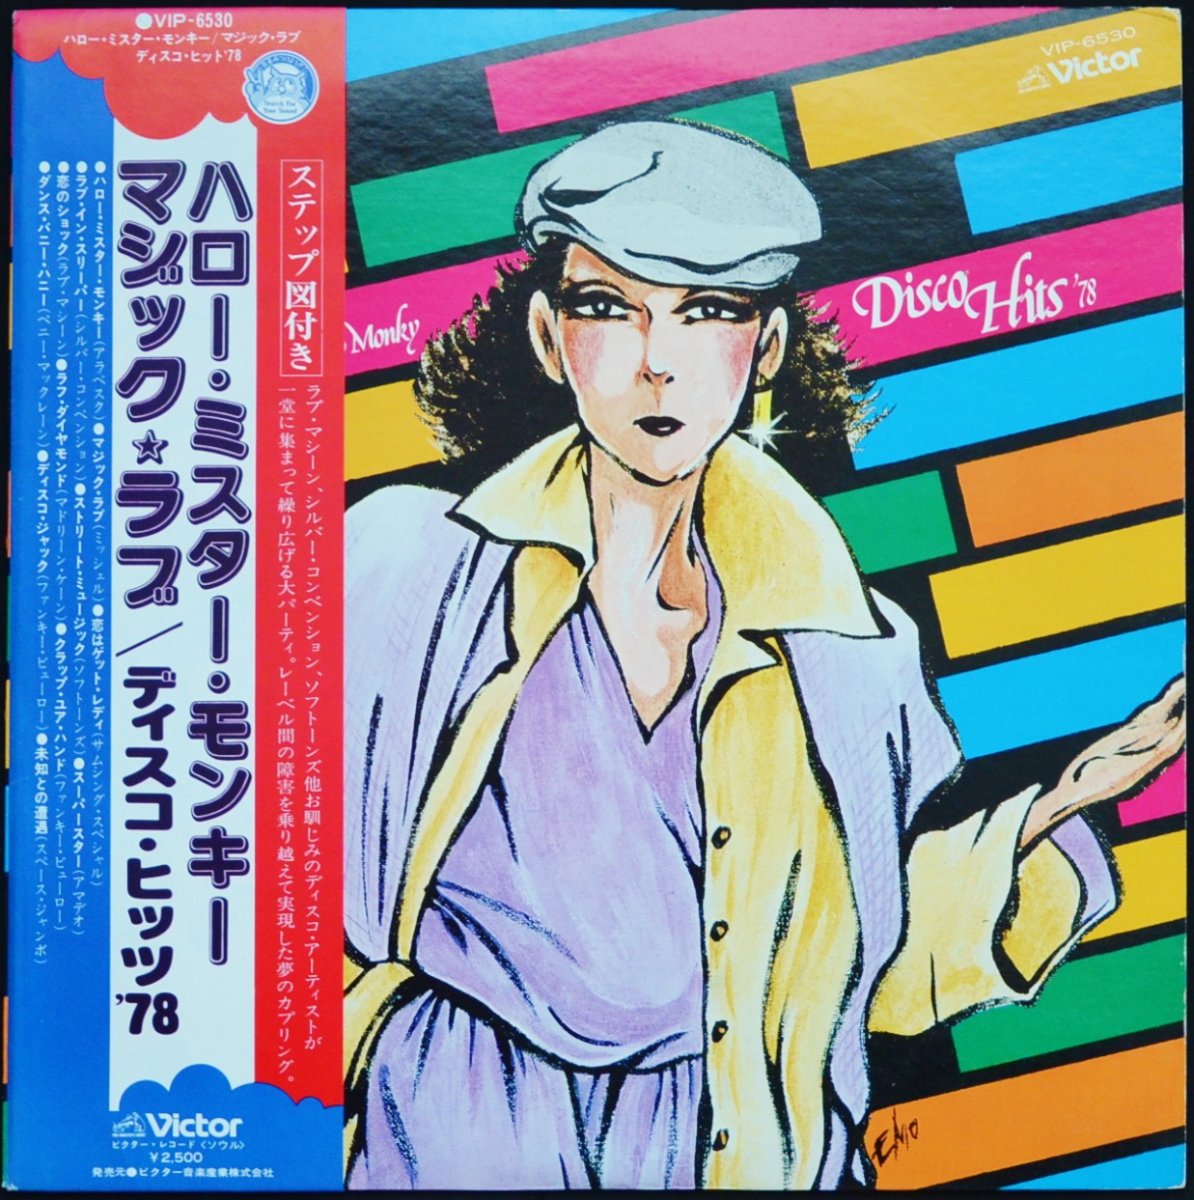 ハロー・ミスター・モンキー (ファンキー・ビューロー)  / ディスコ・ヒッツ '78  (LP)